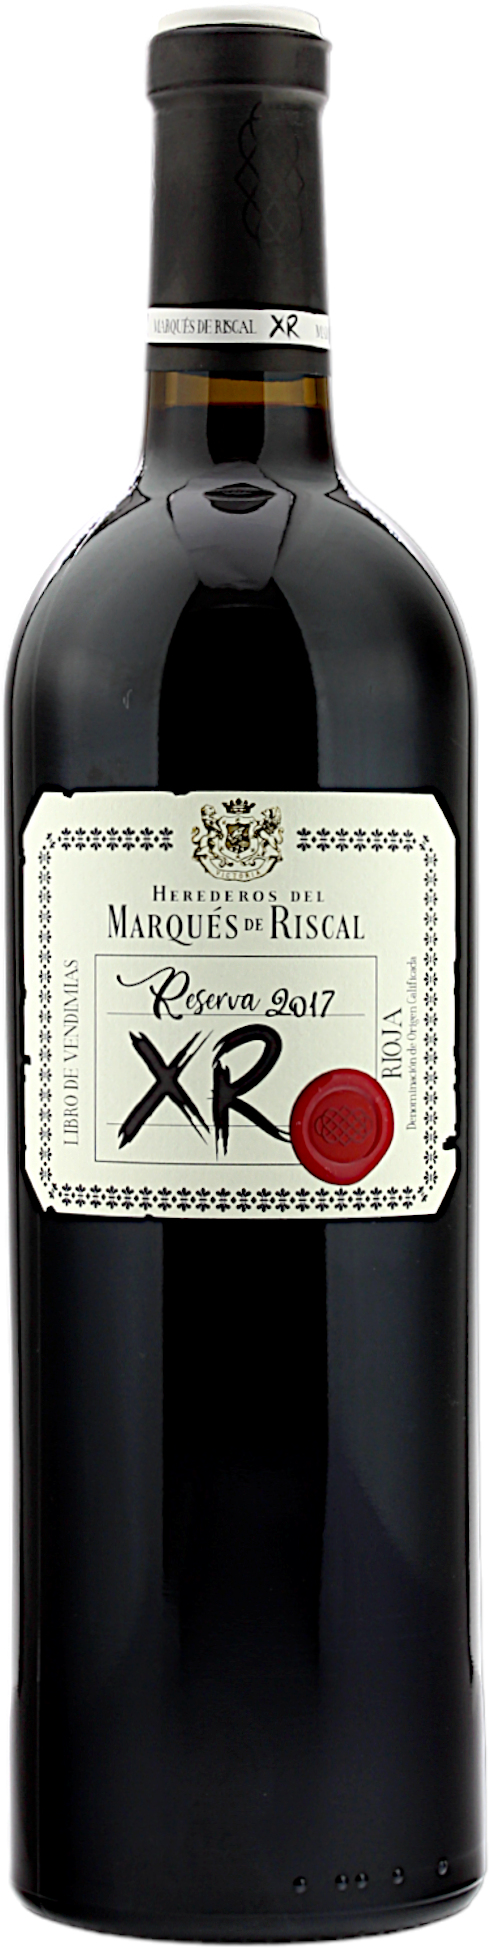 Marqués de Riscal Reserva 2017 XR DOC La Rioja 14.5% 0,75l